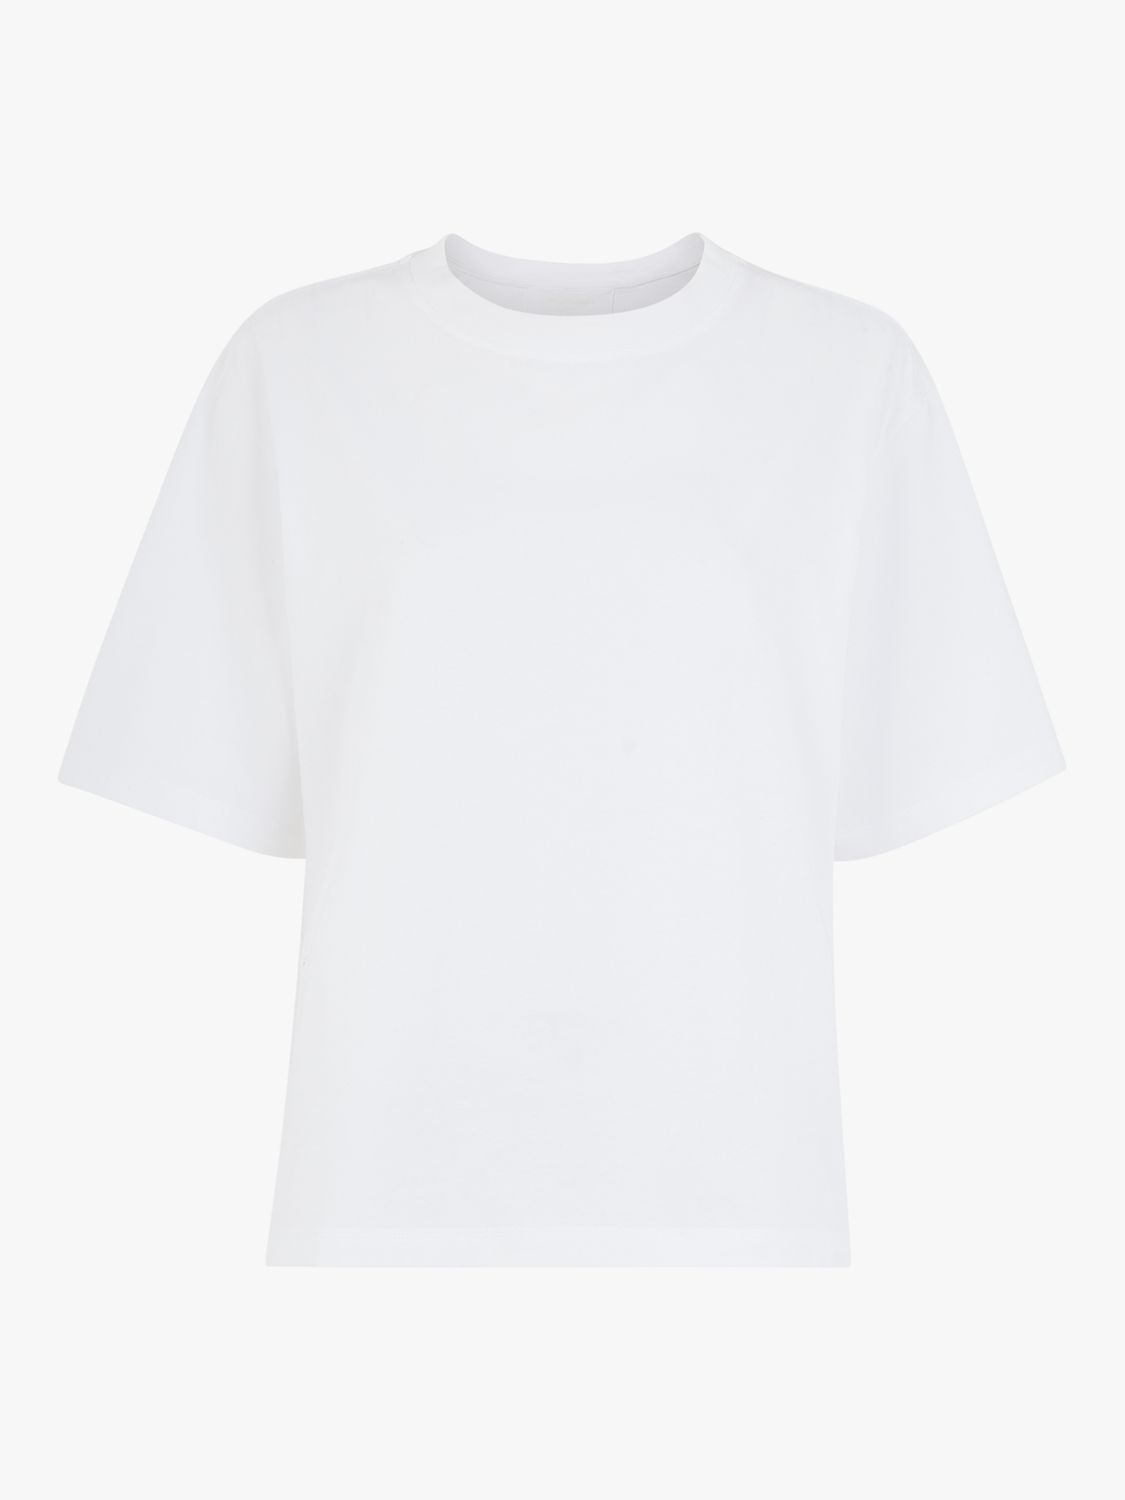 Buy Whistles Boyfriend Oversized T-Shirt, White Online at johnlewis.com